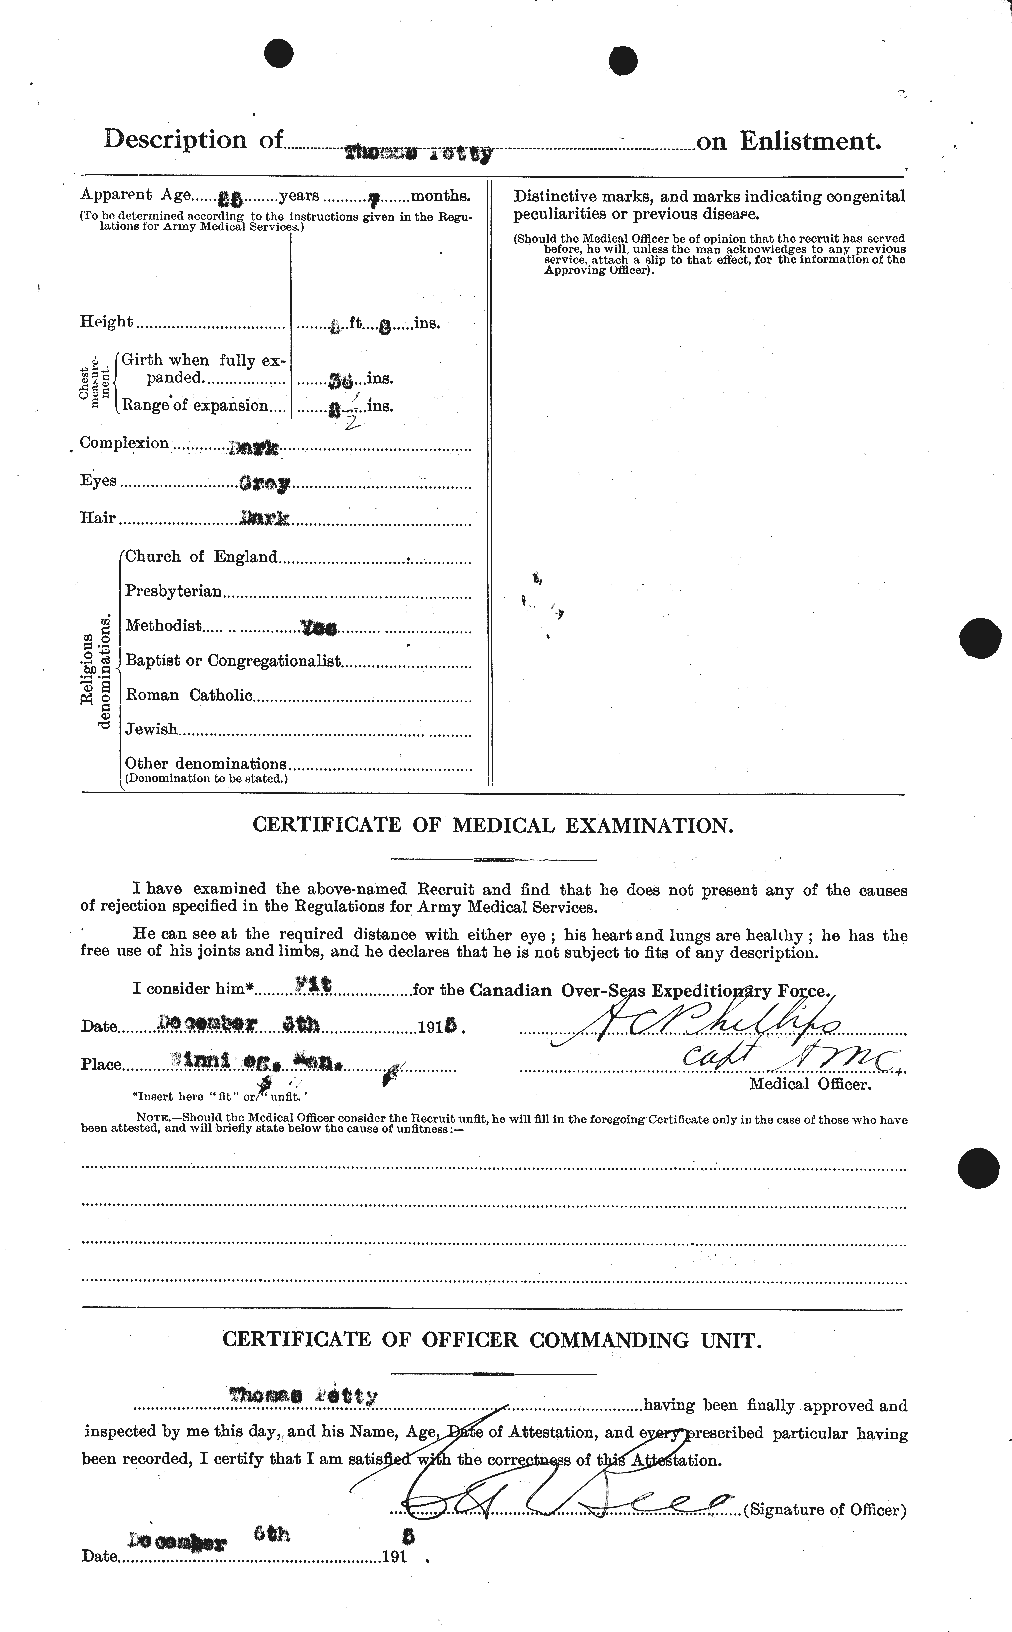 Dossiers du Personnel de la Première Guerre mondiale - CEC 576722b